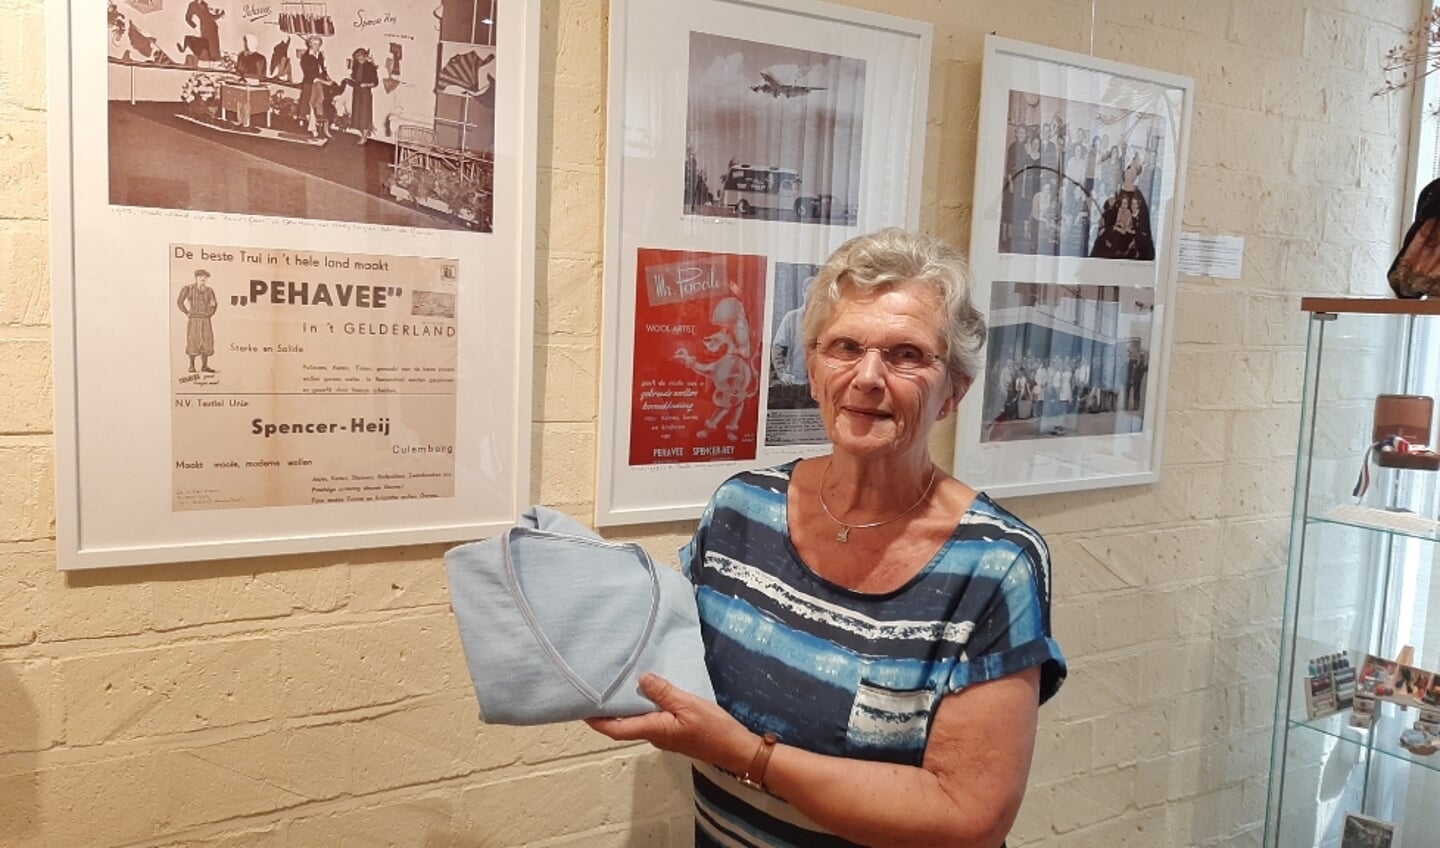 Alies Derwig toon een vest uit de fabriek van Heij. Het wordt nog steeds gedragen! Zij staat hier in haar galerie in Culemborg waar een kleine expositie is ingericht.